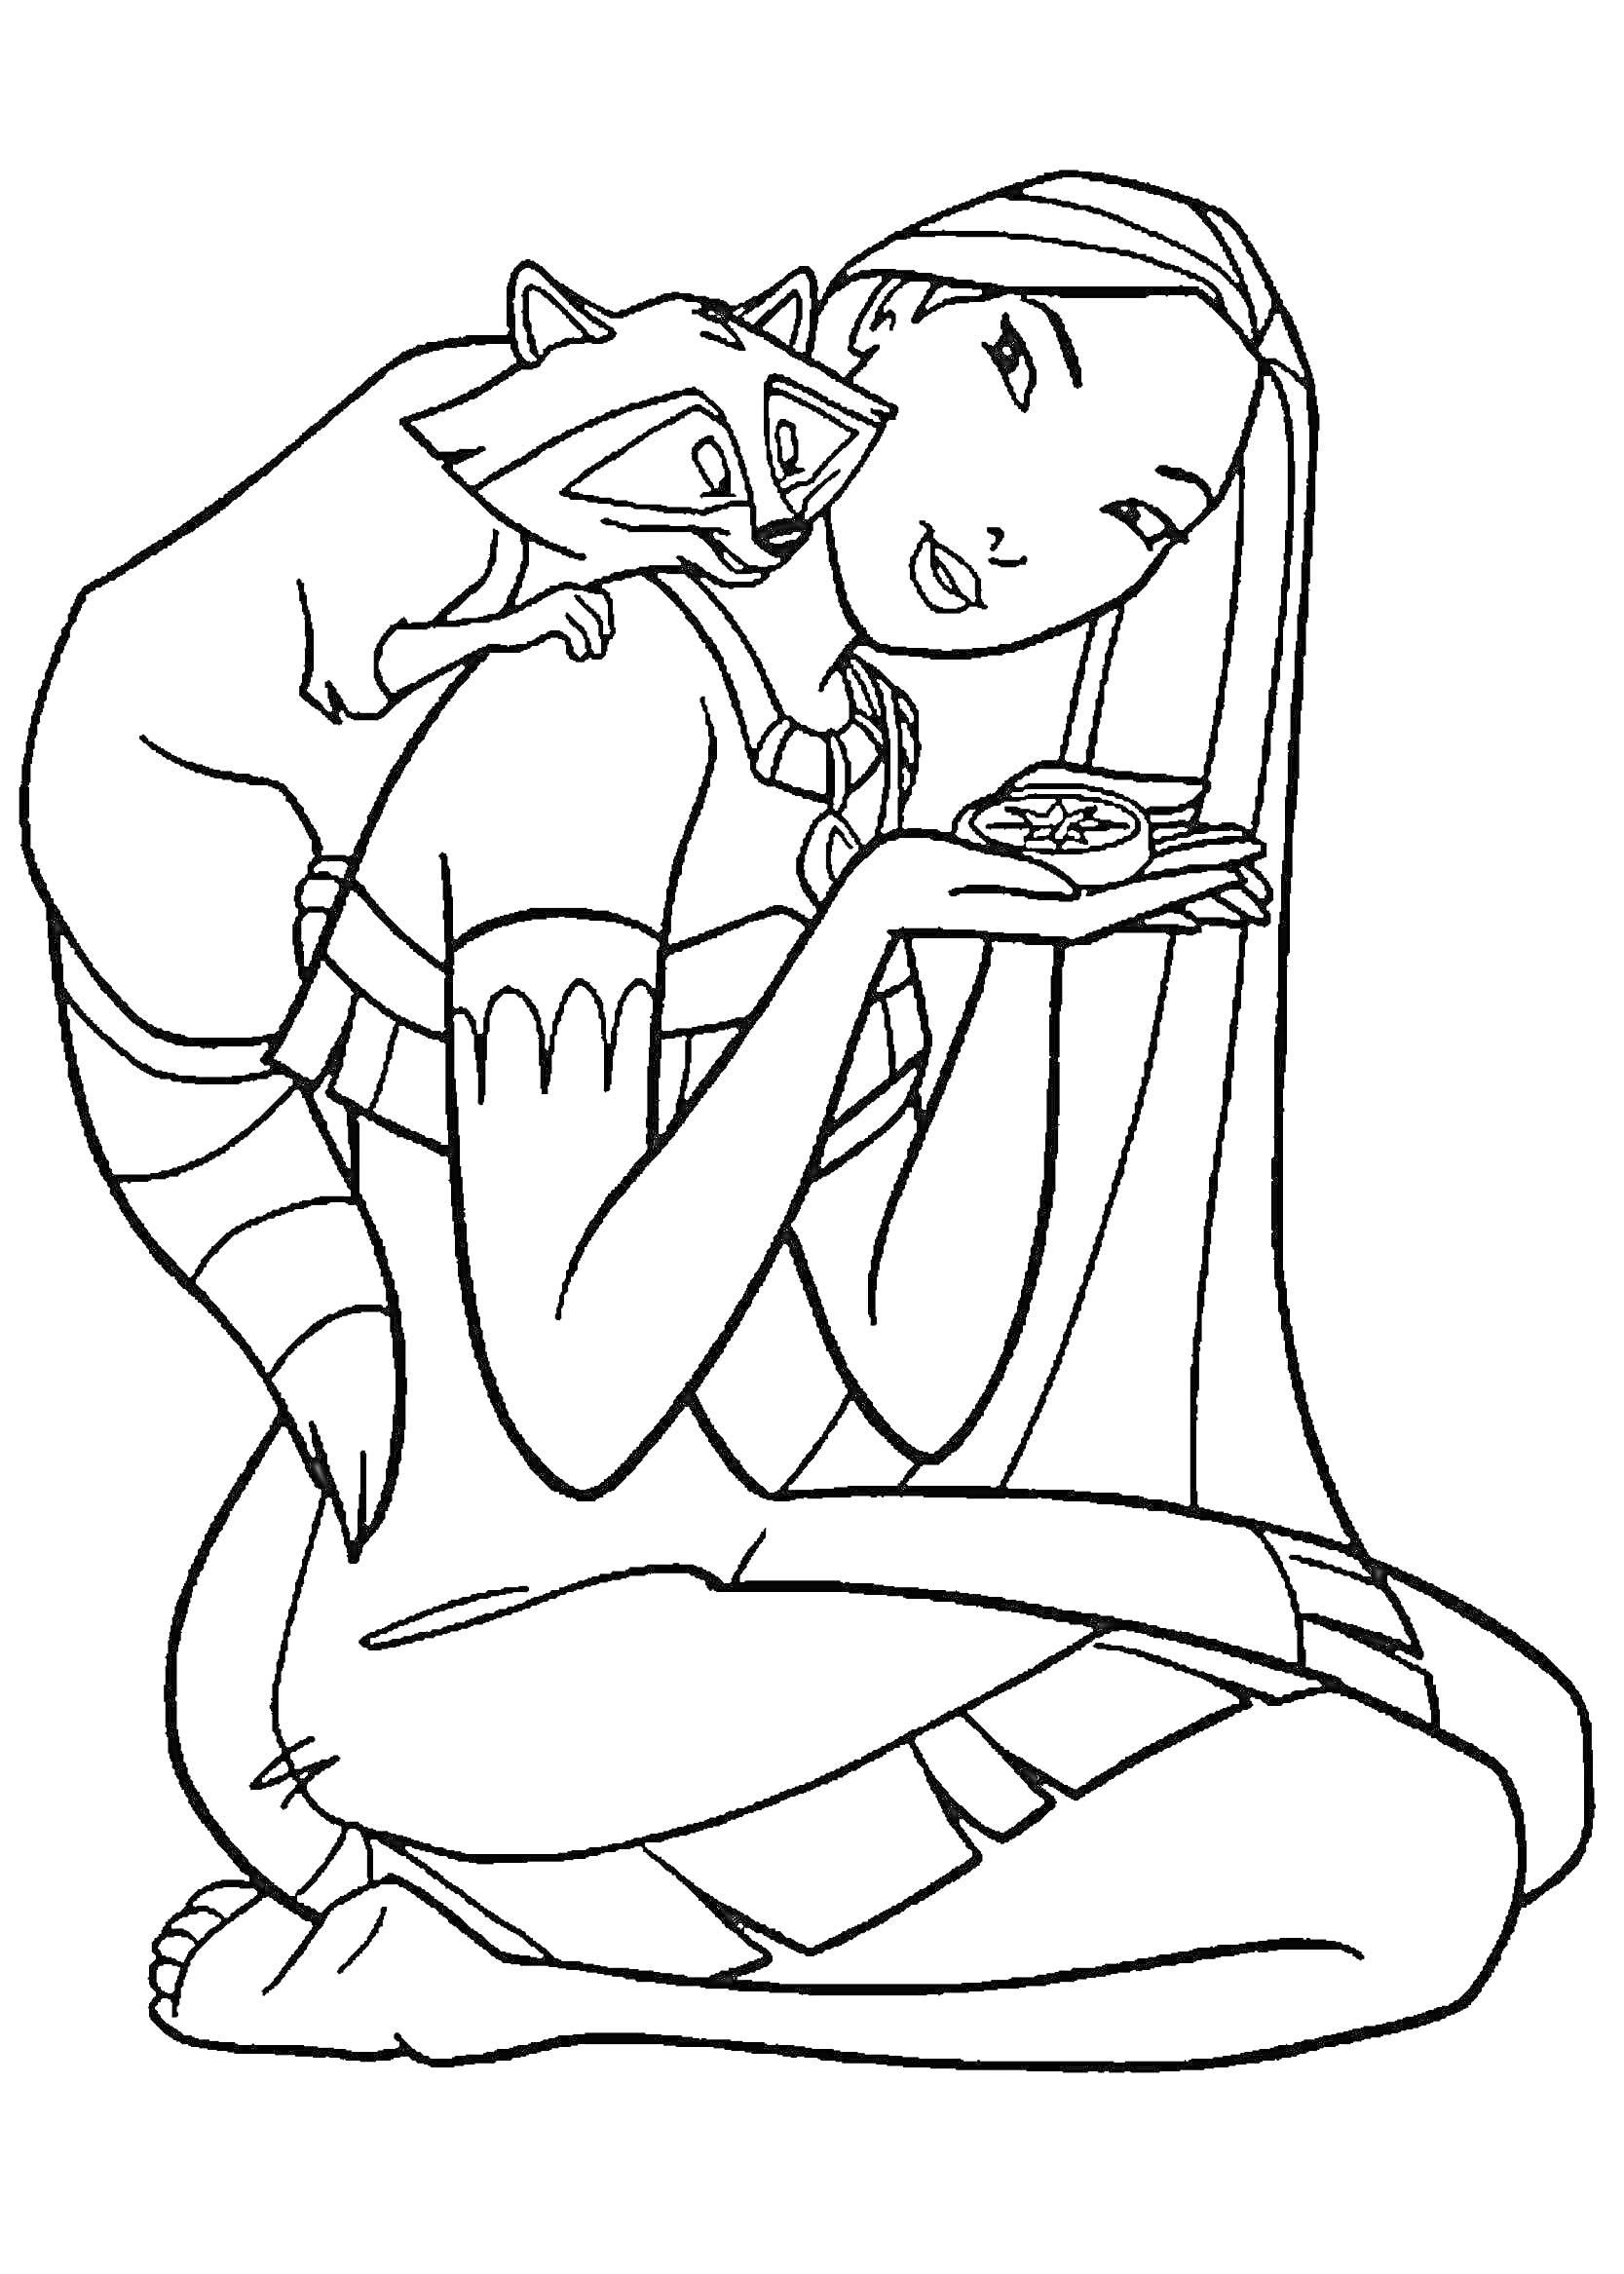 Раскраска Девушка с длинными волосами и енот, держащий в руках изящный предмет